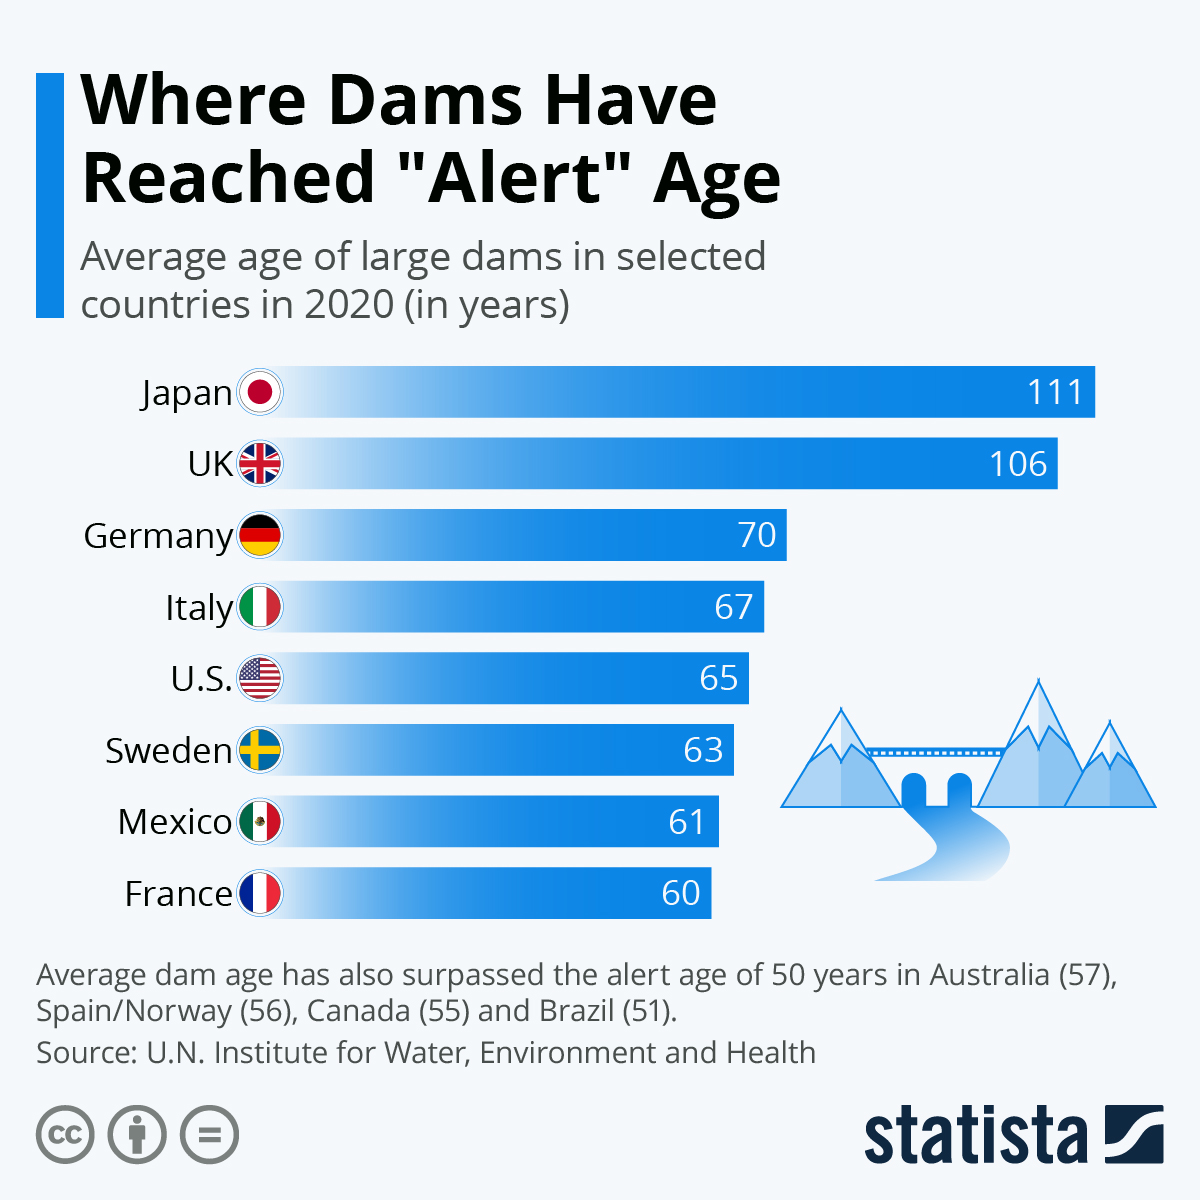 Oldest dams